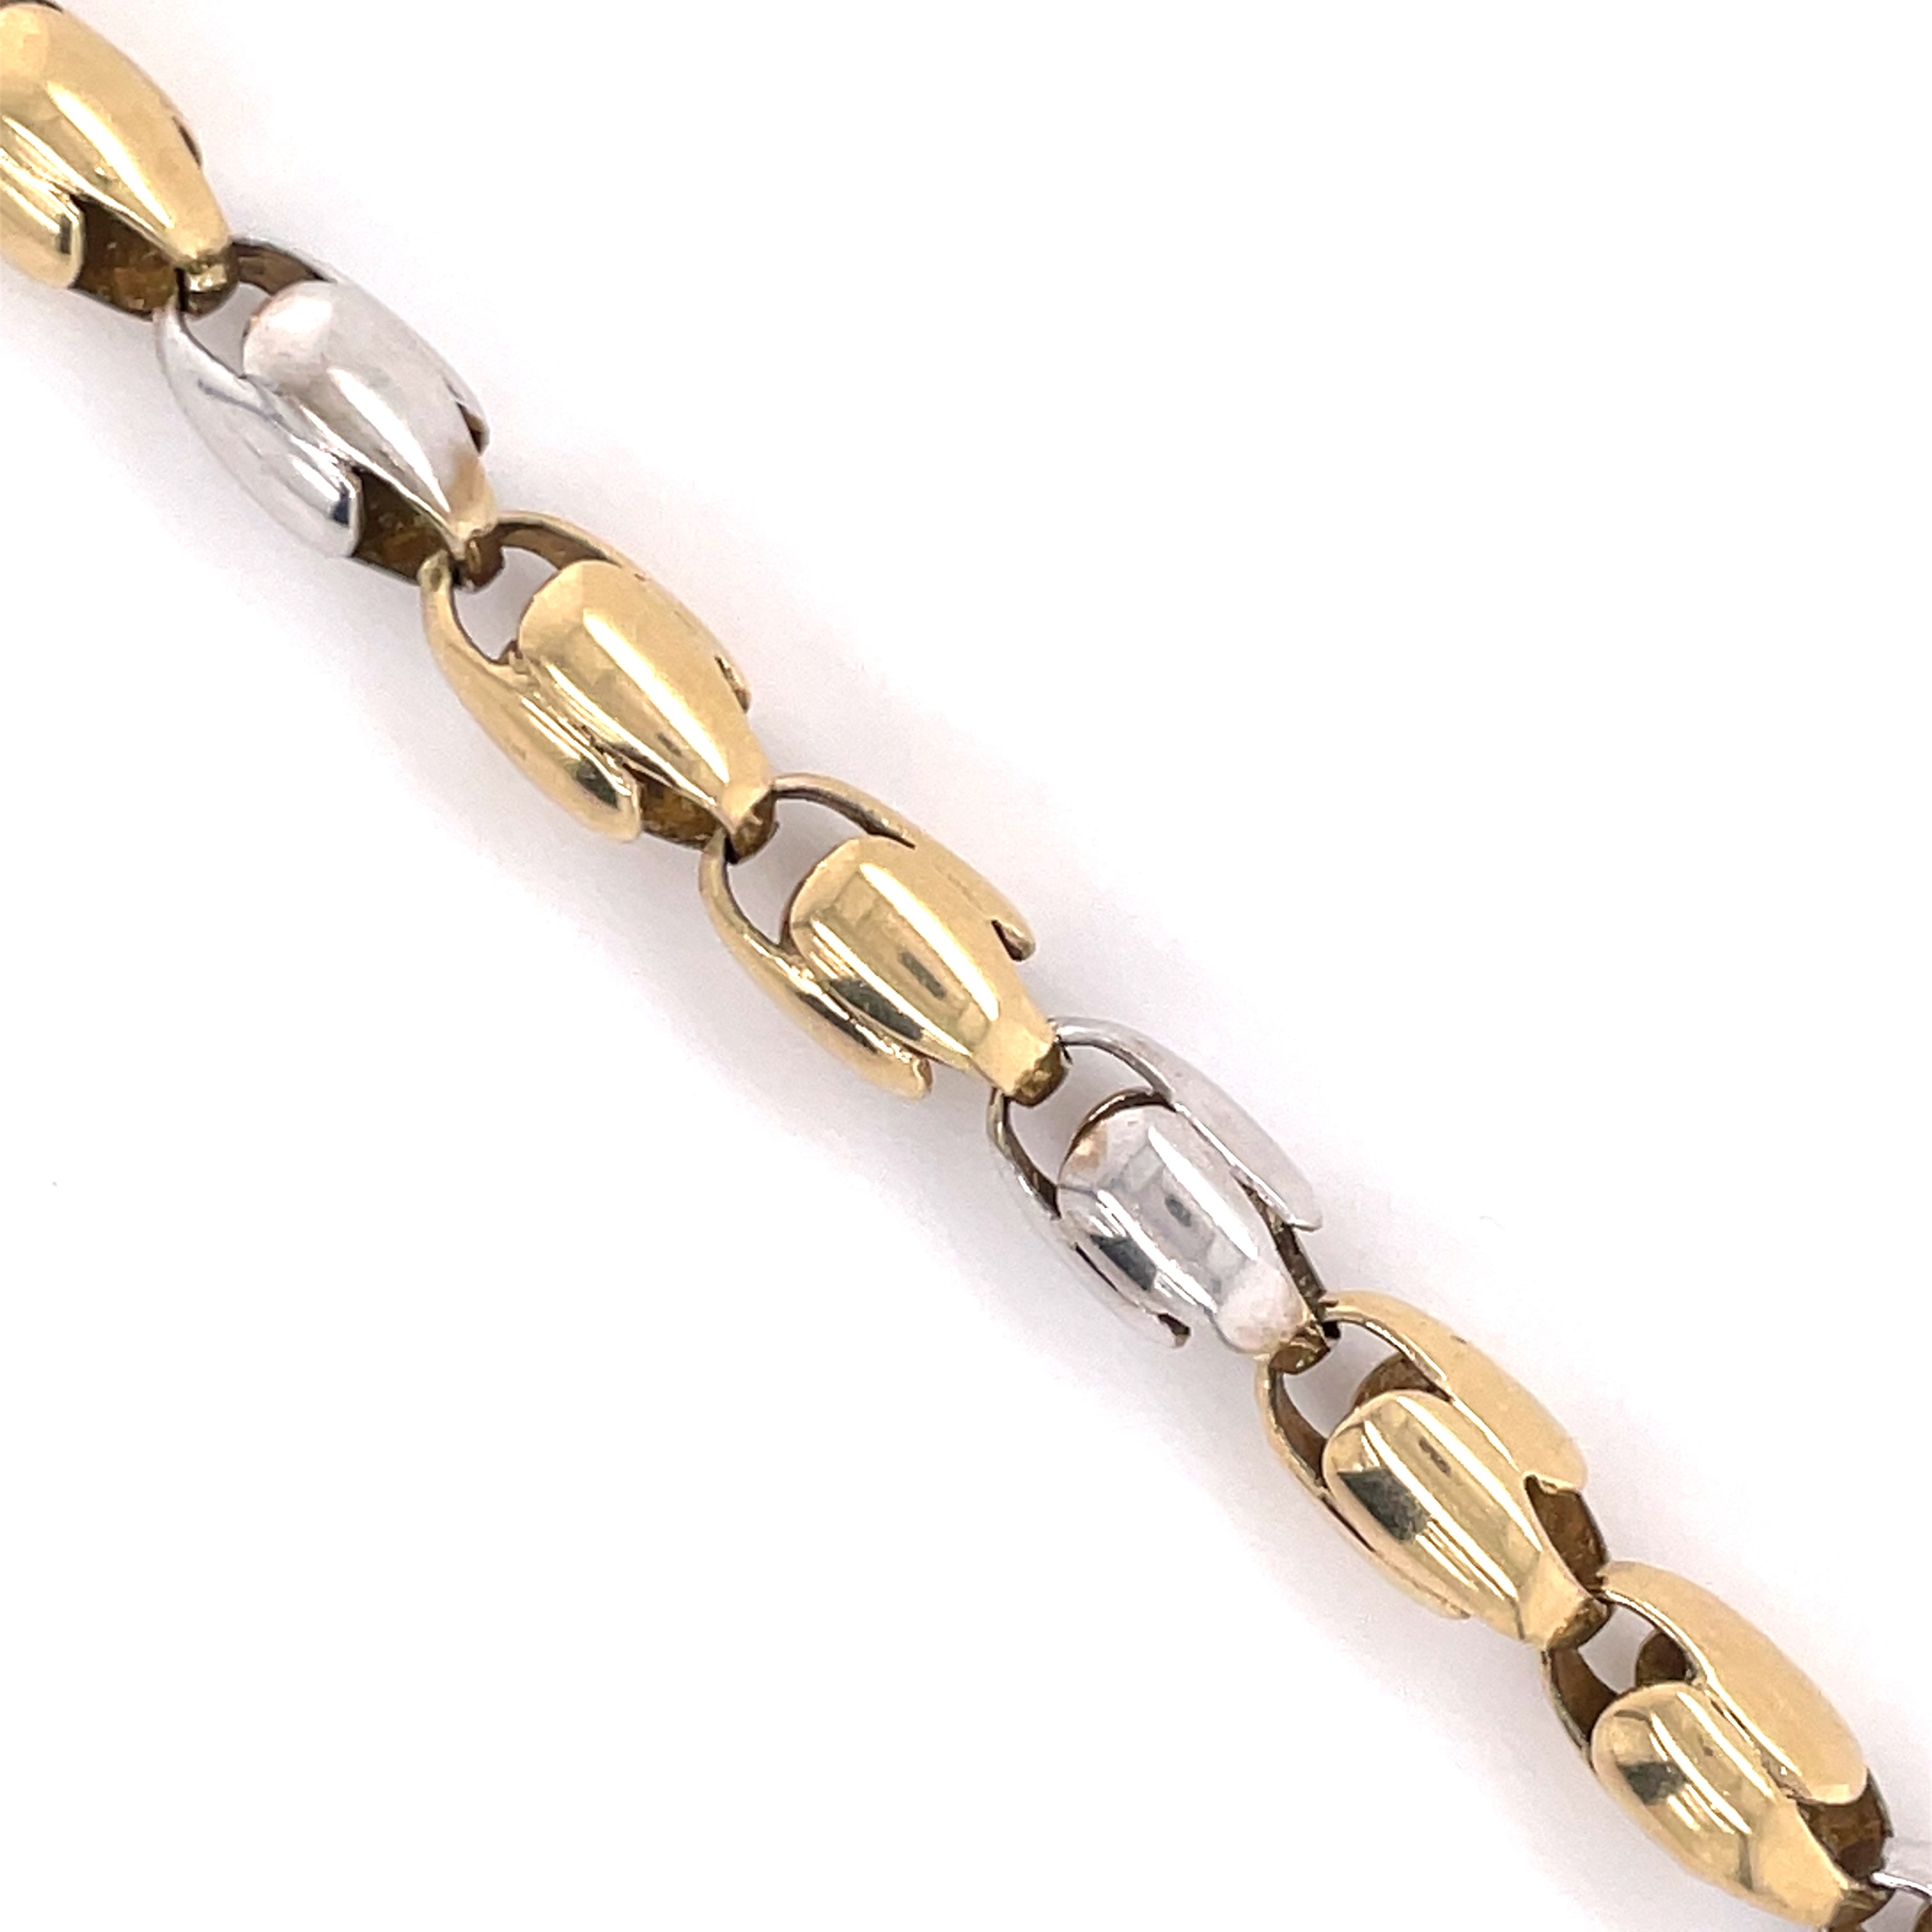 10K Gold Bullet Link Bracelet (Regular) - 7.0MM - White Carat - USA & Canada